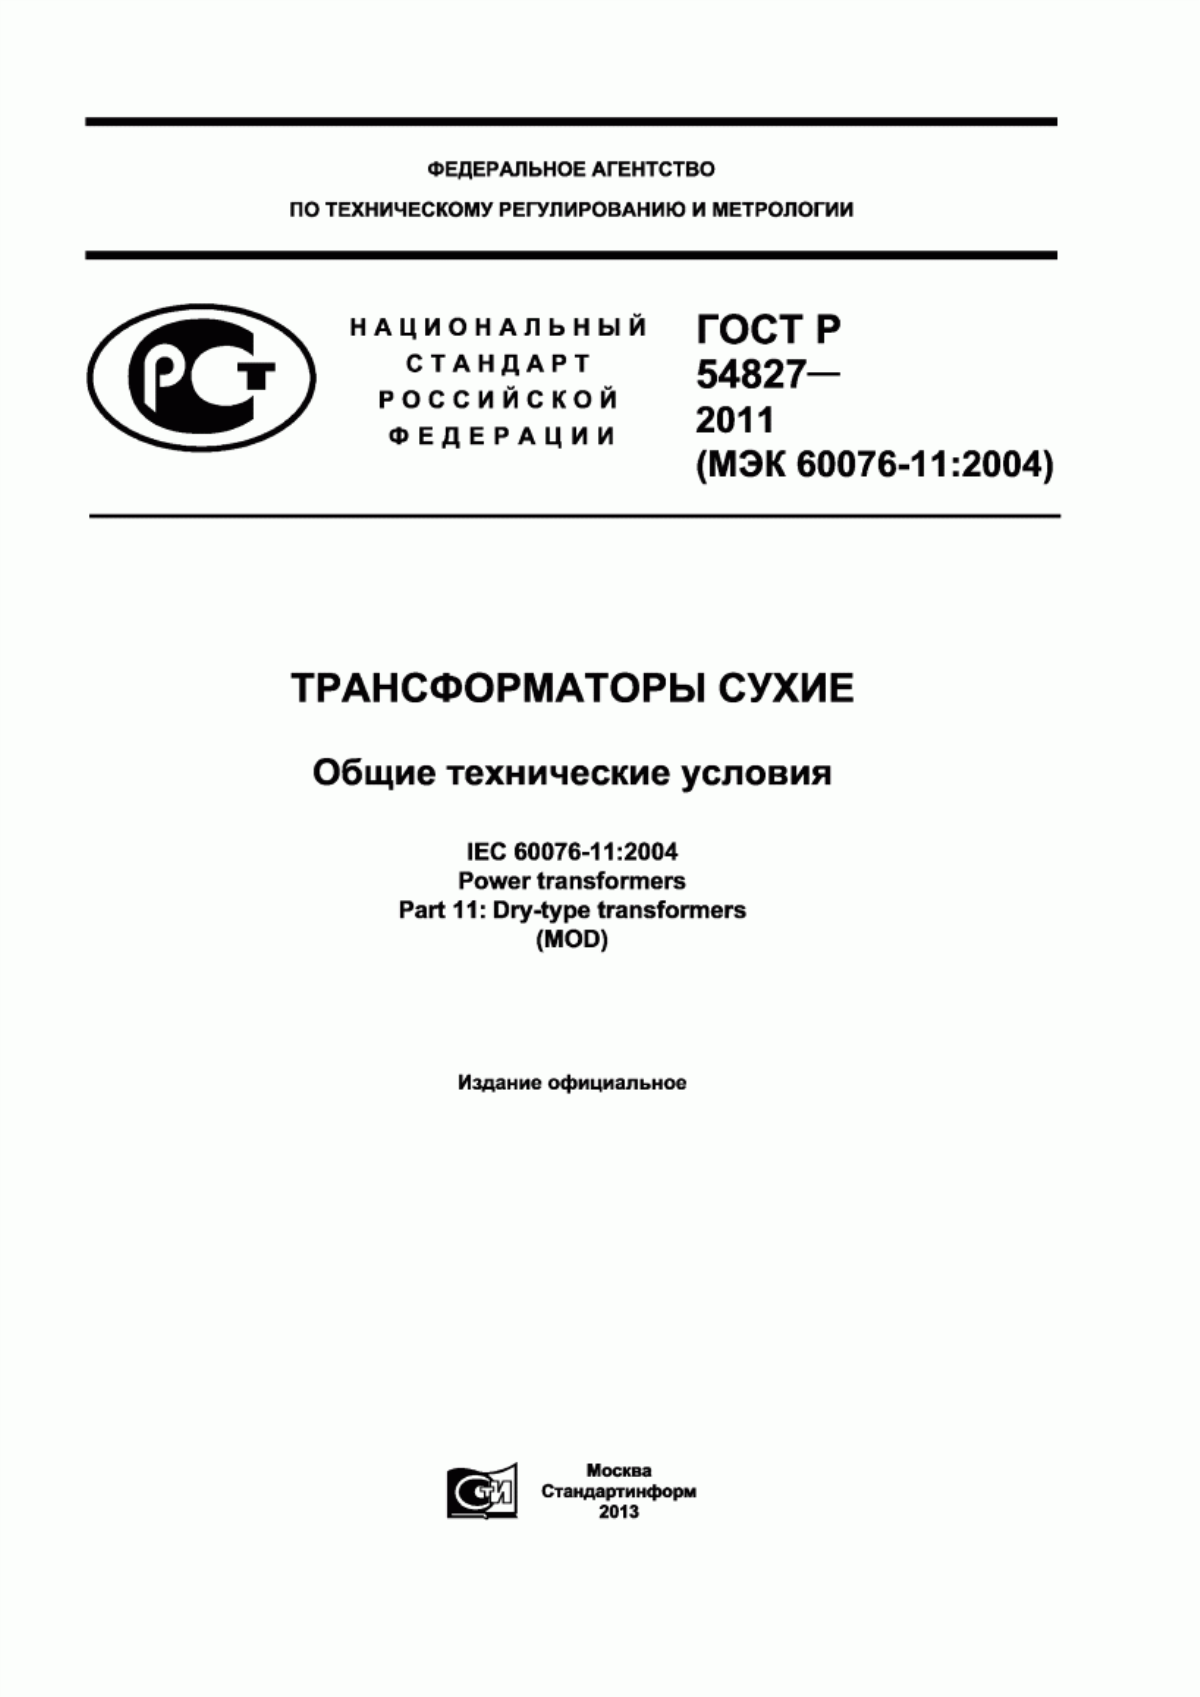 ГОСТ Р 54827-2011 Трансформаторы сухие. Общие технические условия